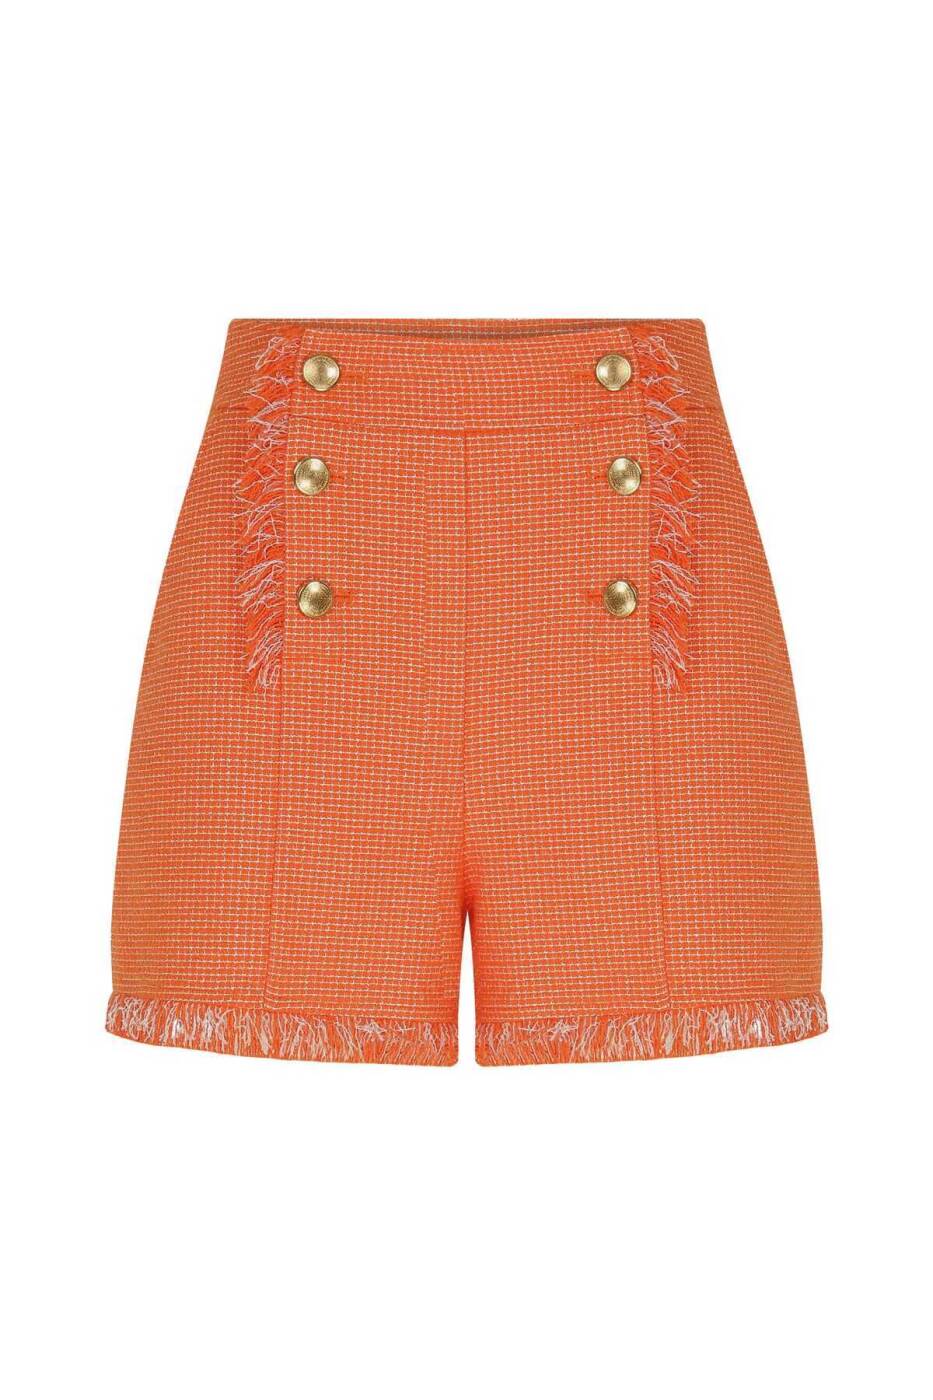 Buttoned Tasseled Women's Shorts Original